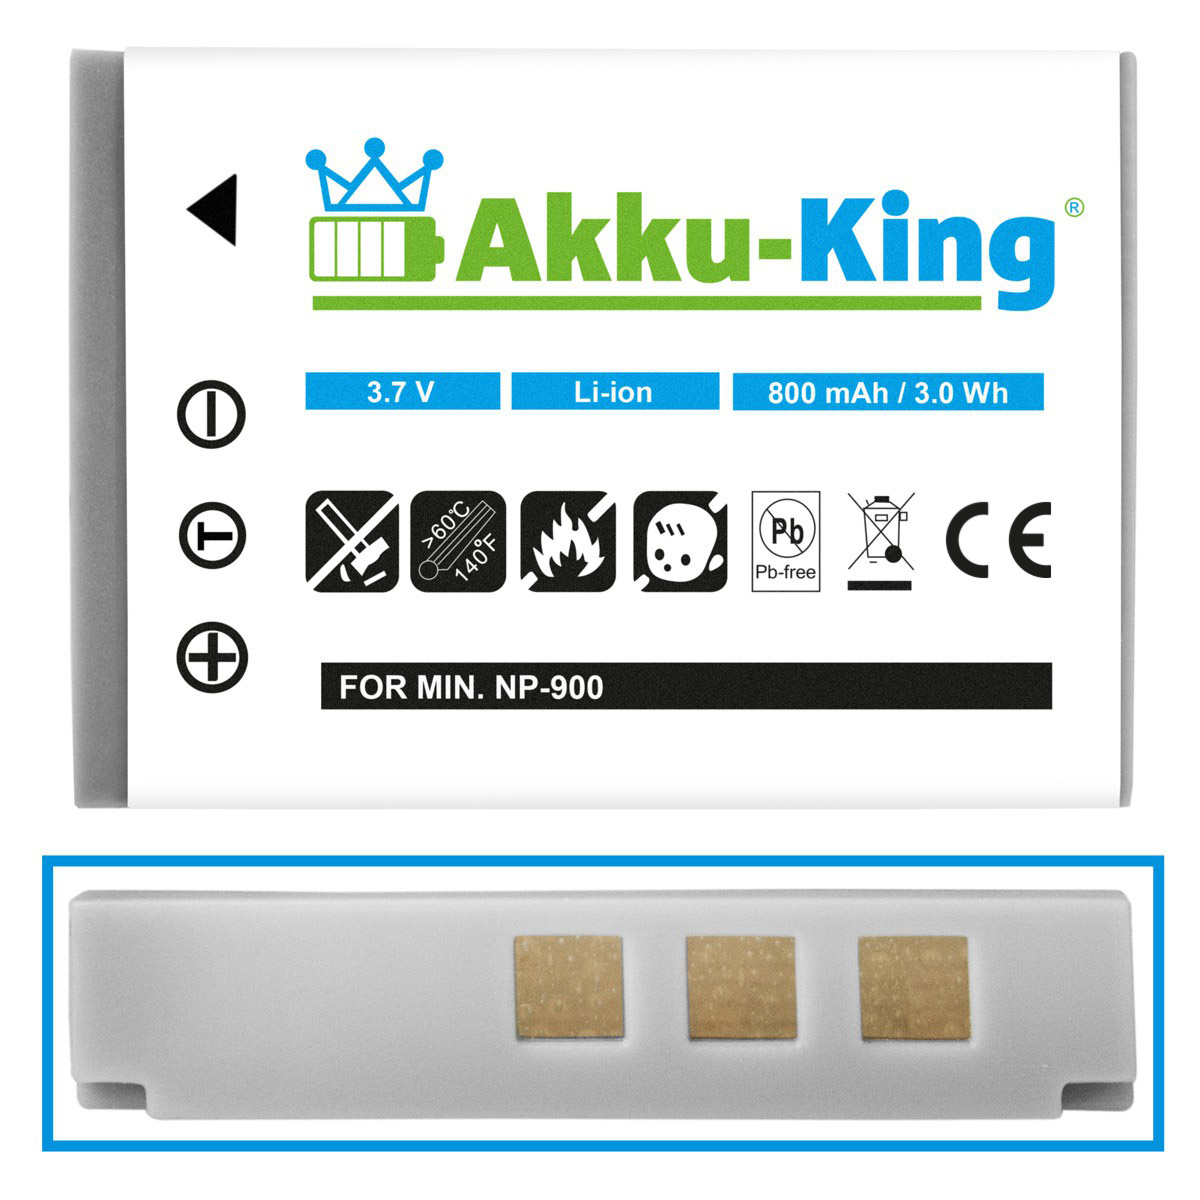 Volt, Akku kompatibel 800mAh Li-Ion Premier AKKU-KING 3.7 DS-4330 Kamera-Akku, mit